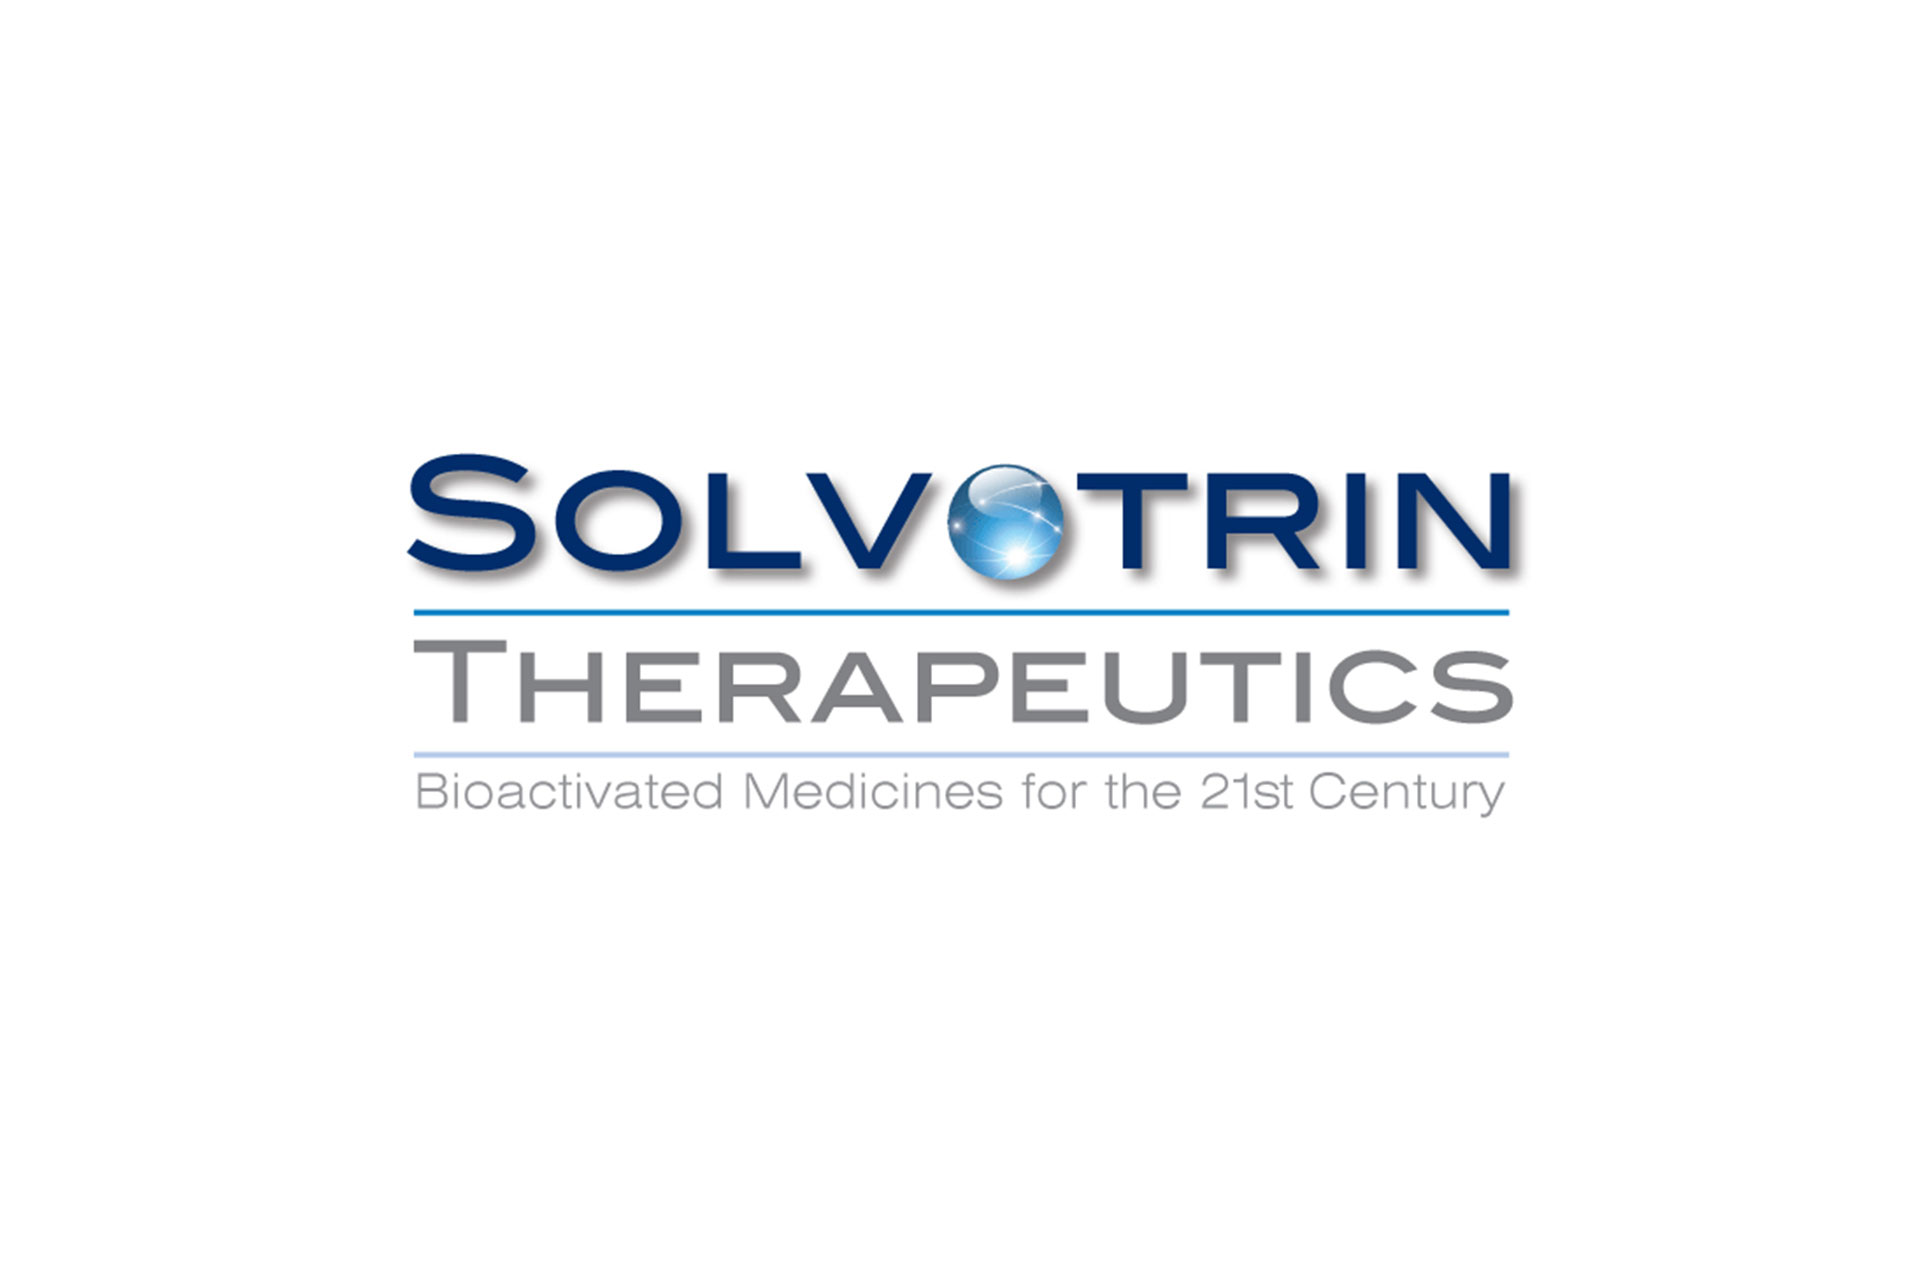 Solvotrin logo